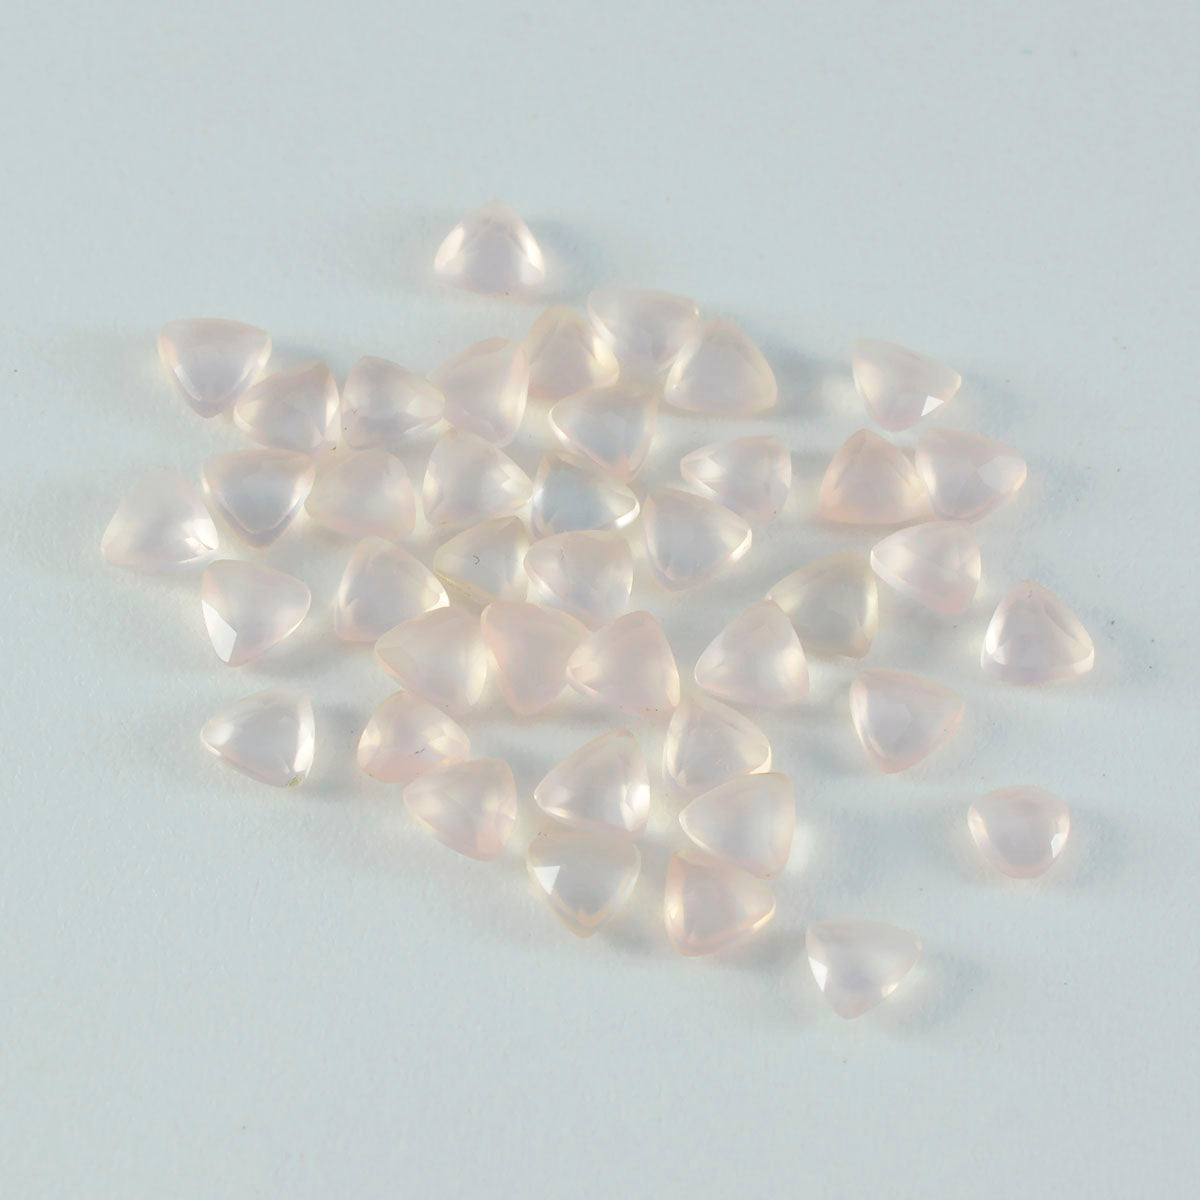 riyogems 1 шт. розовый кварц ограненный 5x5 мм форма триллиона милый качественный драгоценный камень